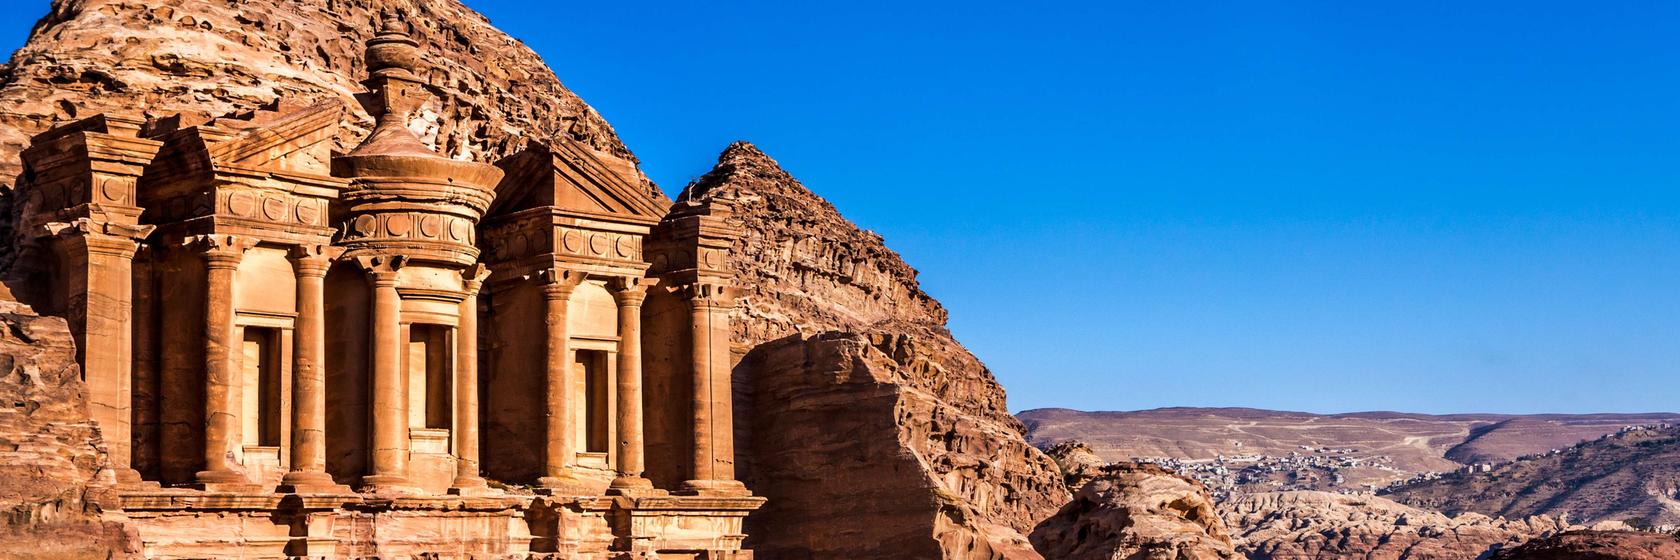 Náboženství, historie a kultura v Jordánsku